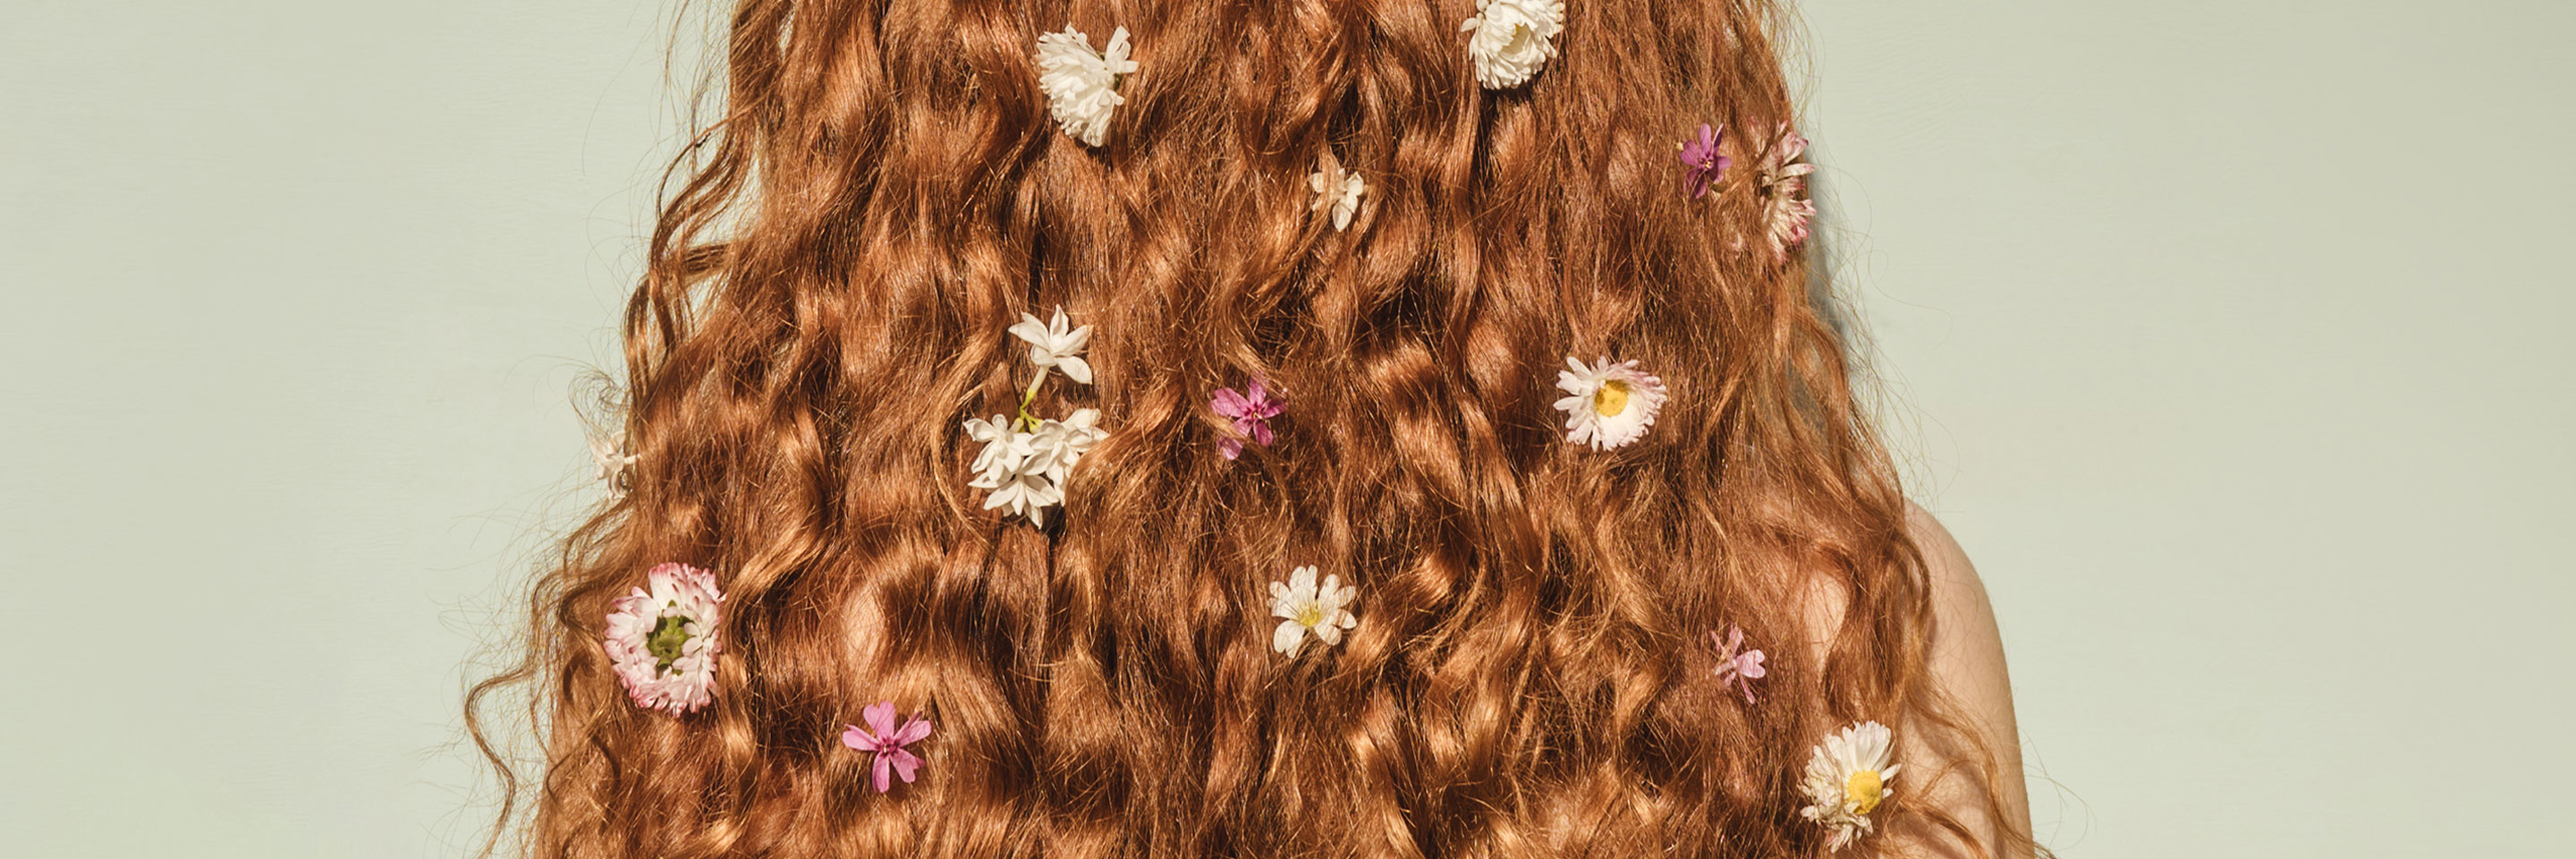 Что такое «дорогой» оттенок волос? Чем различаются краски для салонного и домашнего окрашивания?